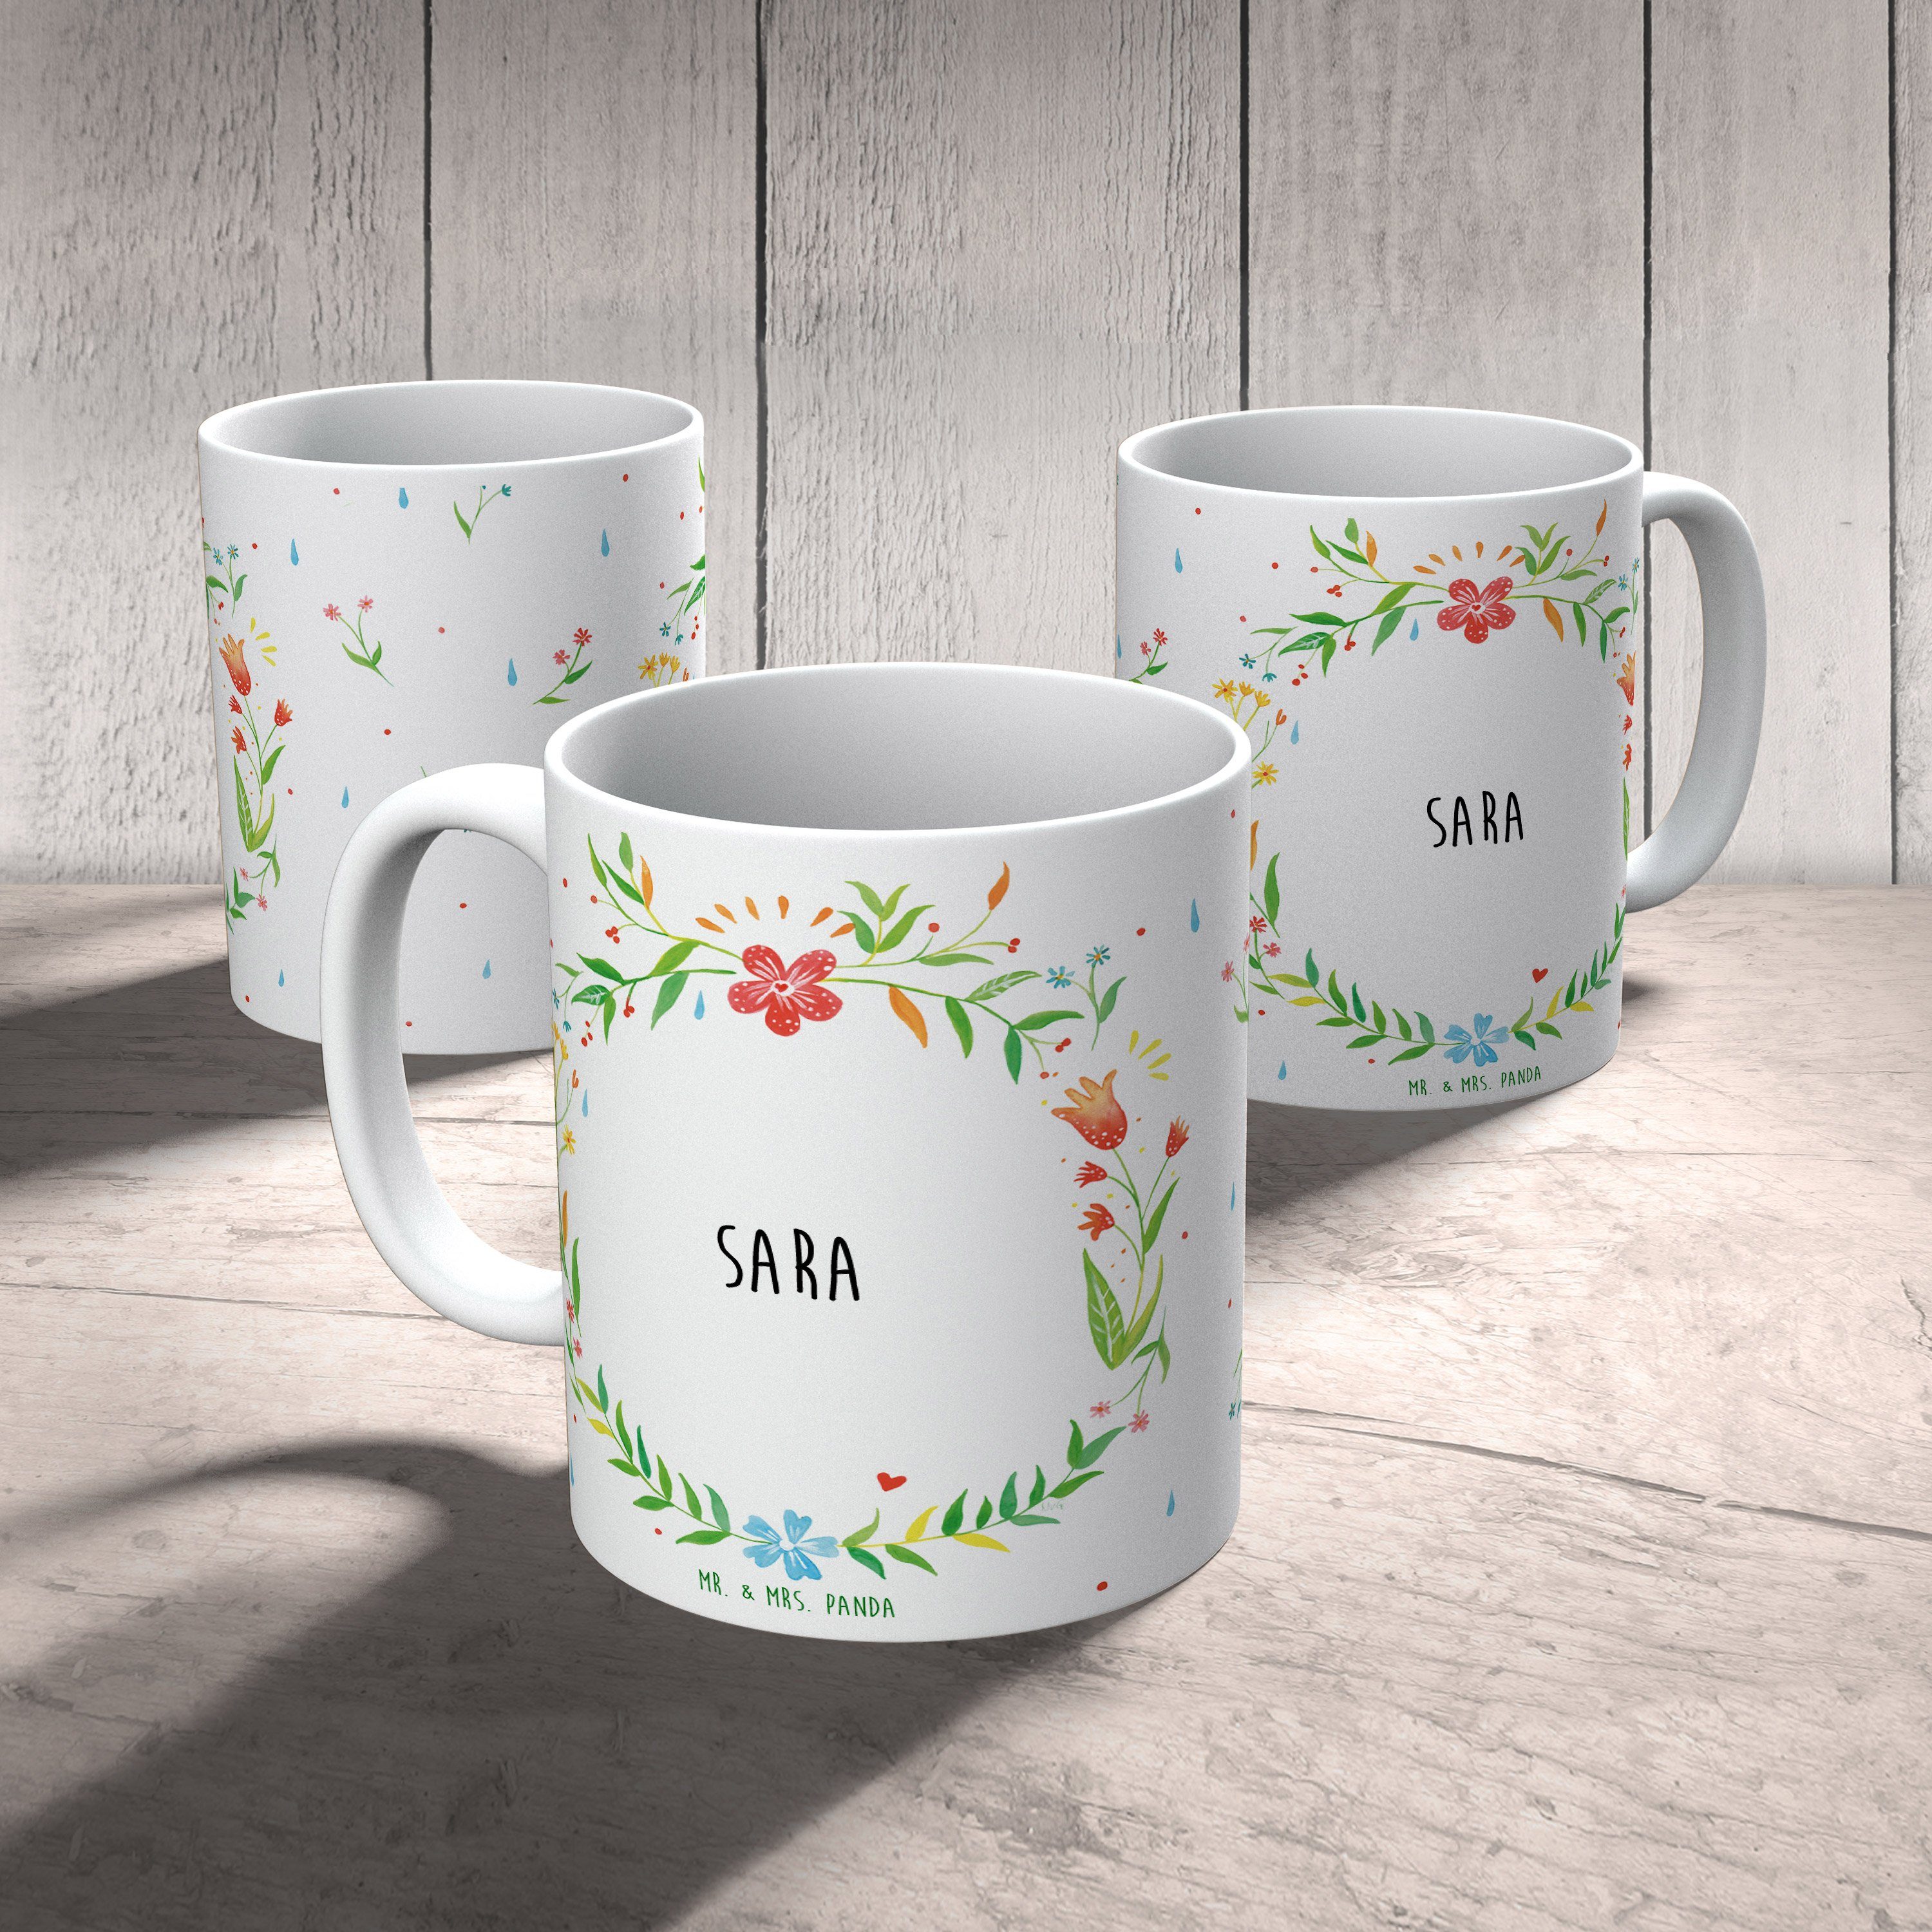 Mr. Becher, Tasse Keramik Tasse Sara Tee, & Panda Geschenk, - Kaffeebecher, Tasse, Sprüche, Büro Mrs.